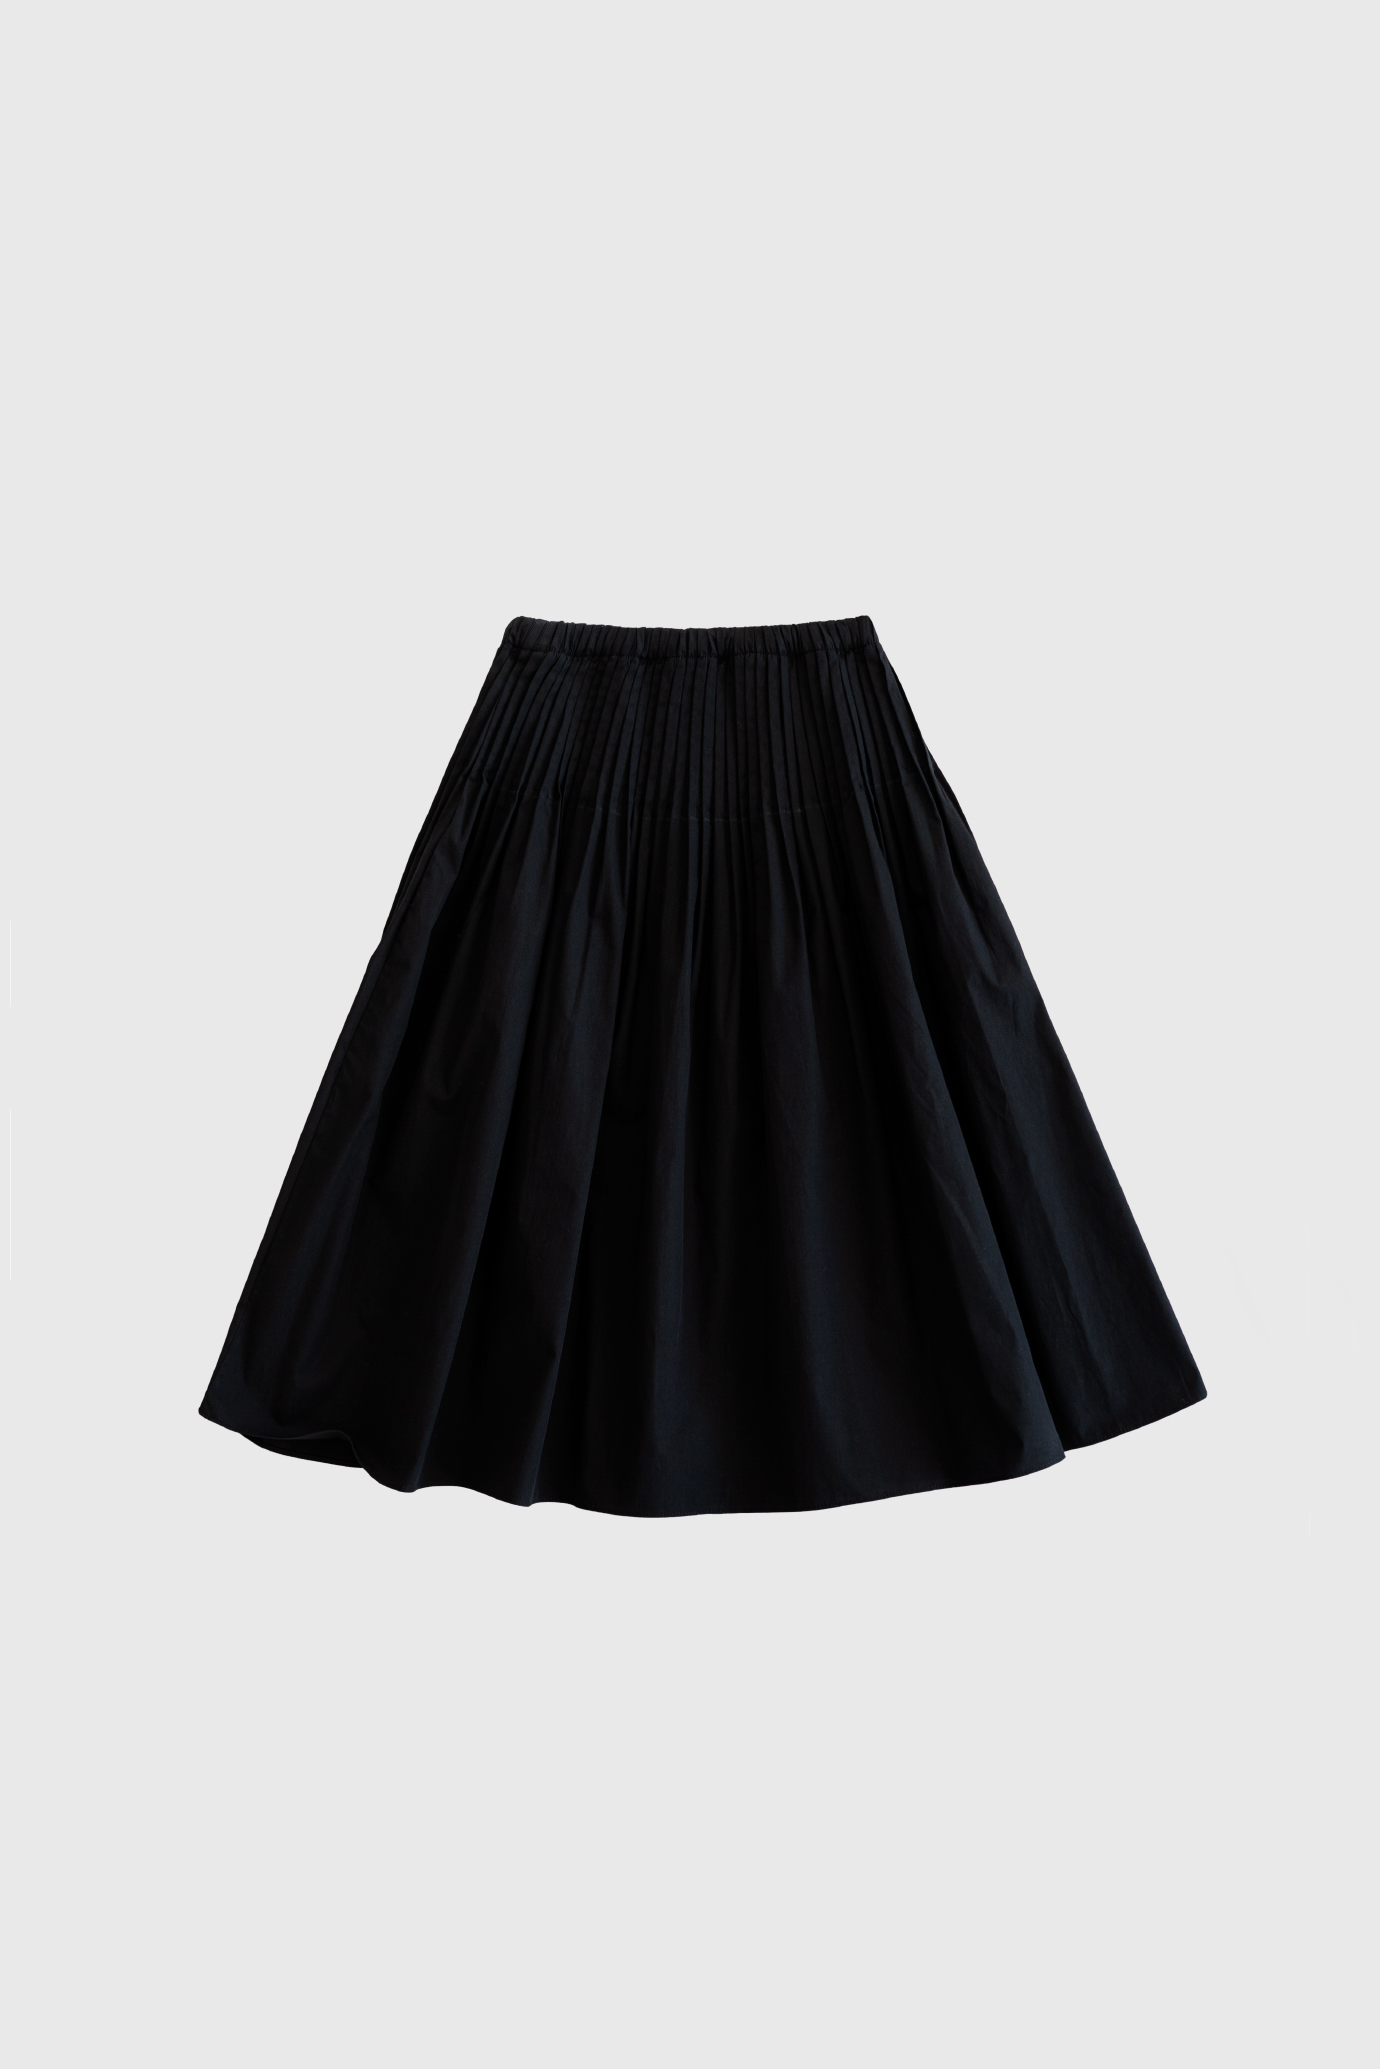 17806_Pintuck Skirt